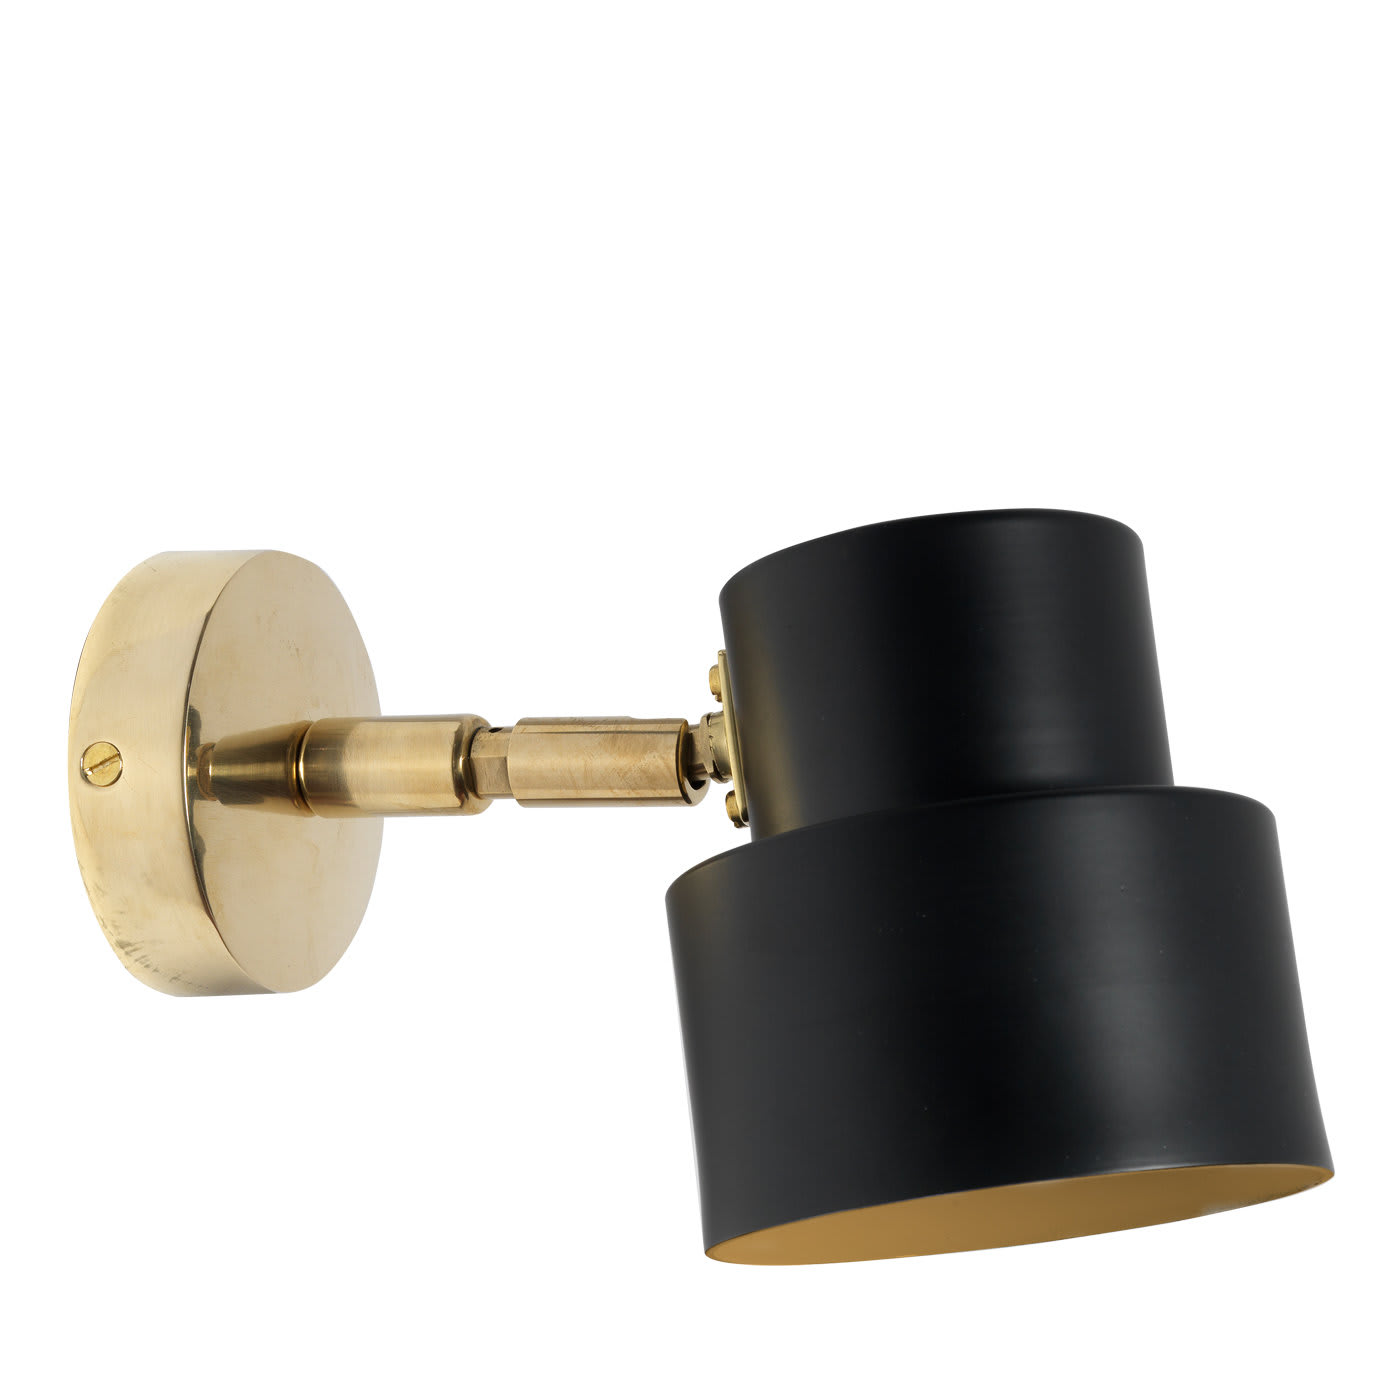 Satellite N°3 Applique Lamp - Bronzetto